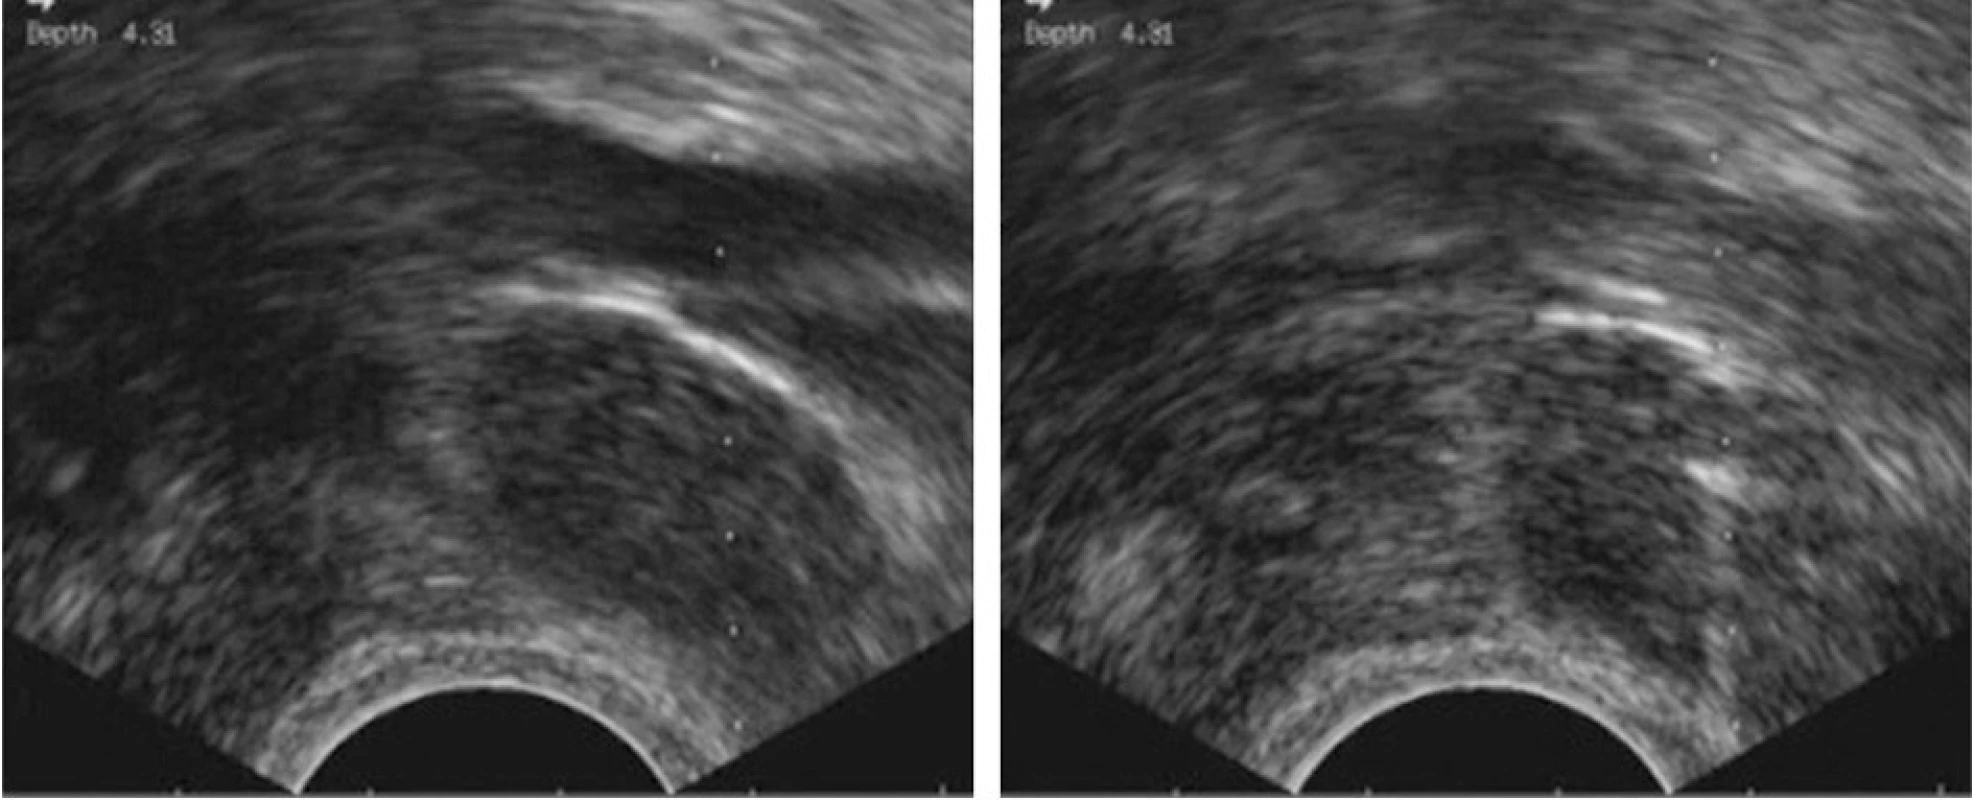 Tru-cut biopsie infiltrované uzliny v obturatorní fosse při externích ilických cévách, vaginální přístup. Ultrazvuková kontrola umožňuje přesnou vizualizaci hrotu jehly (vpravo) a bezpečné provedení výkonu.